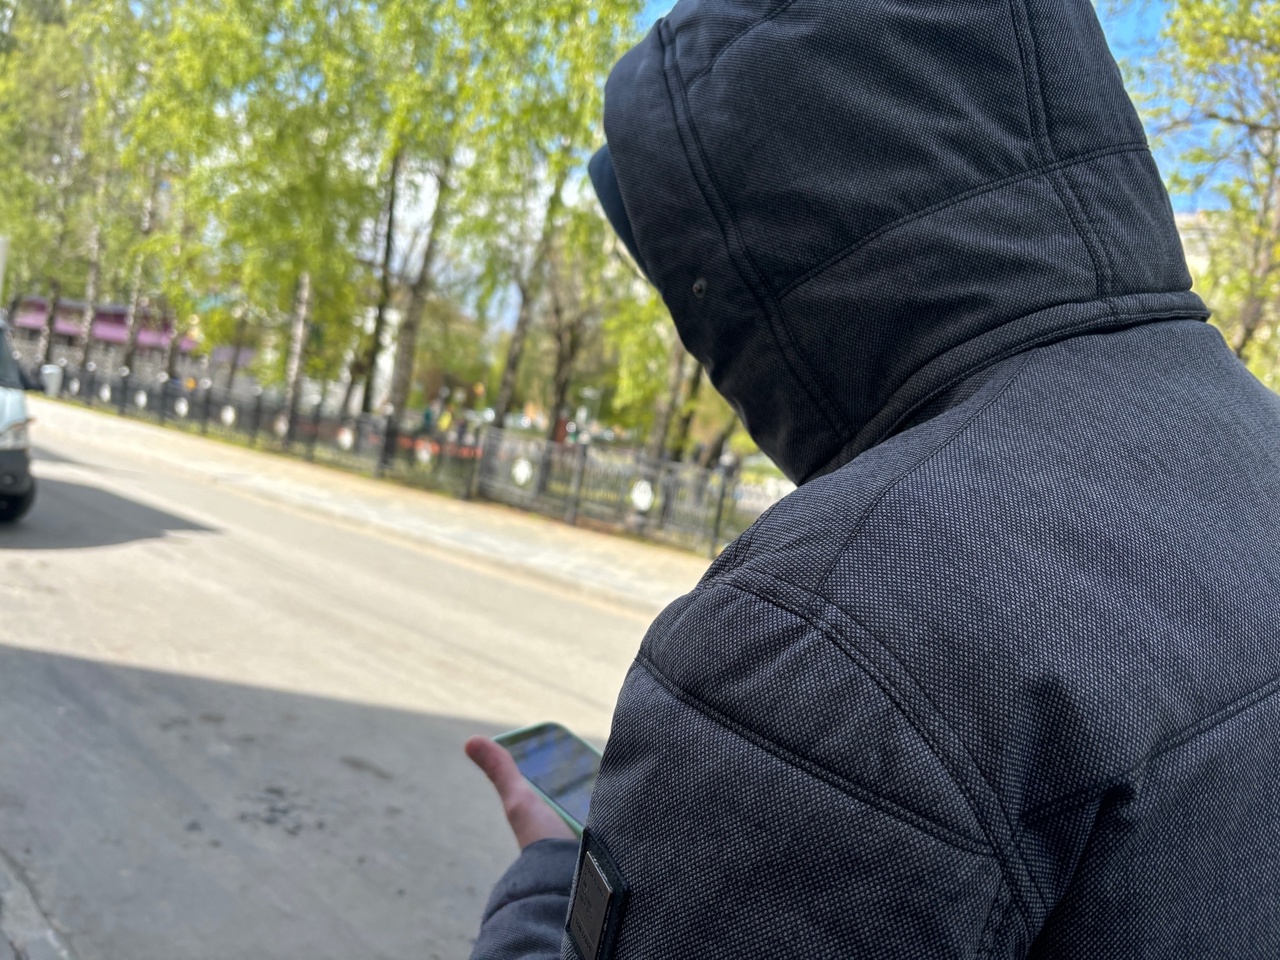 Жителя Дзержинска начали шантажировать после того, как он посидел на сайте для взрослых